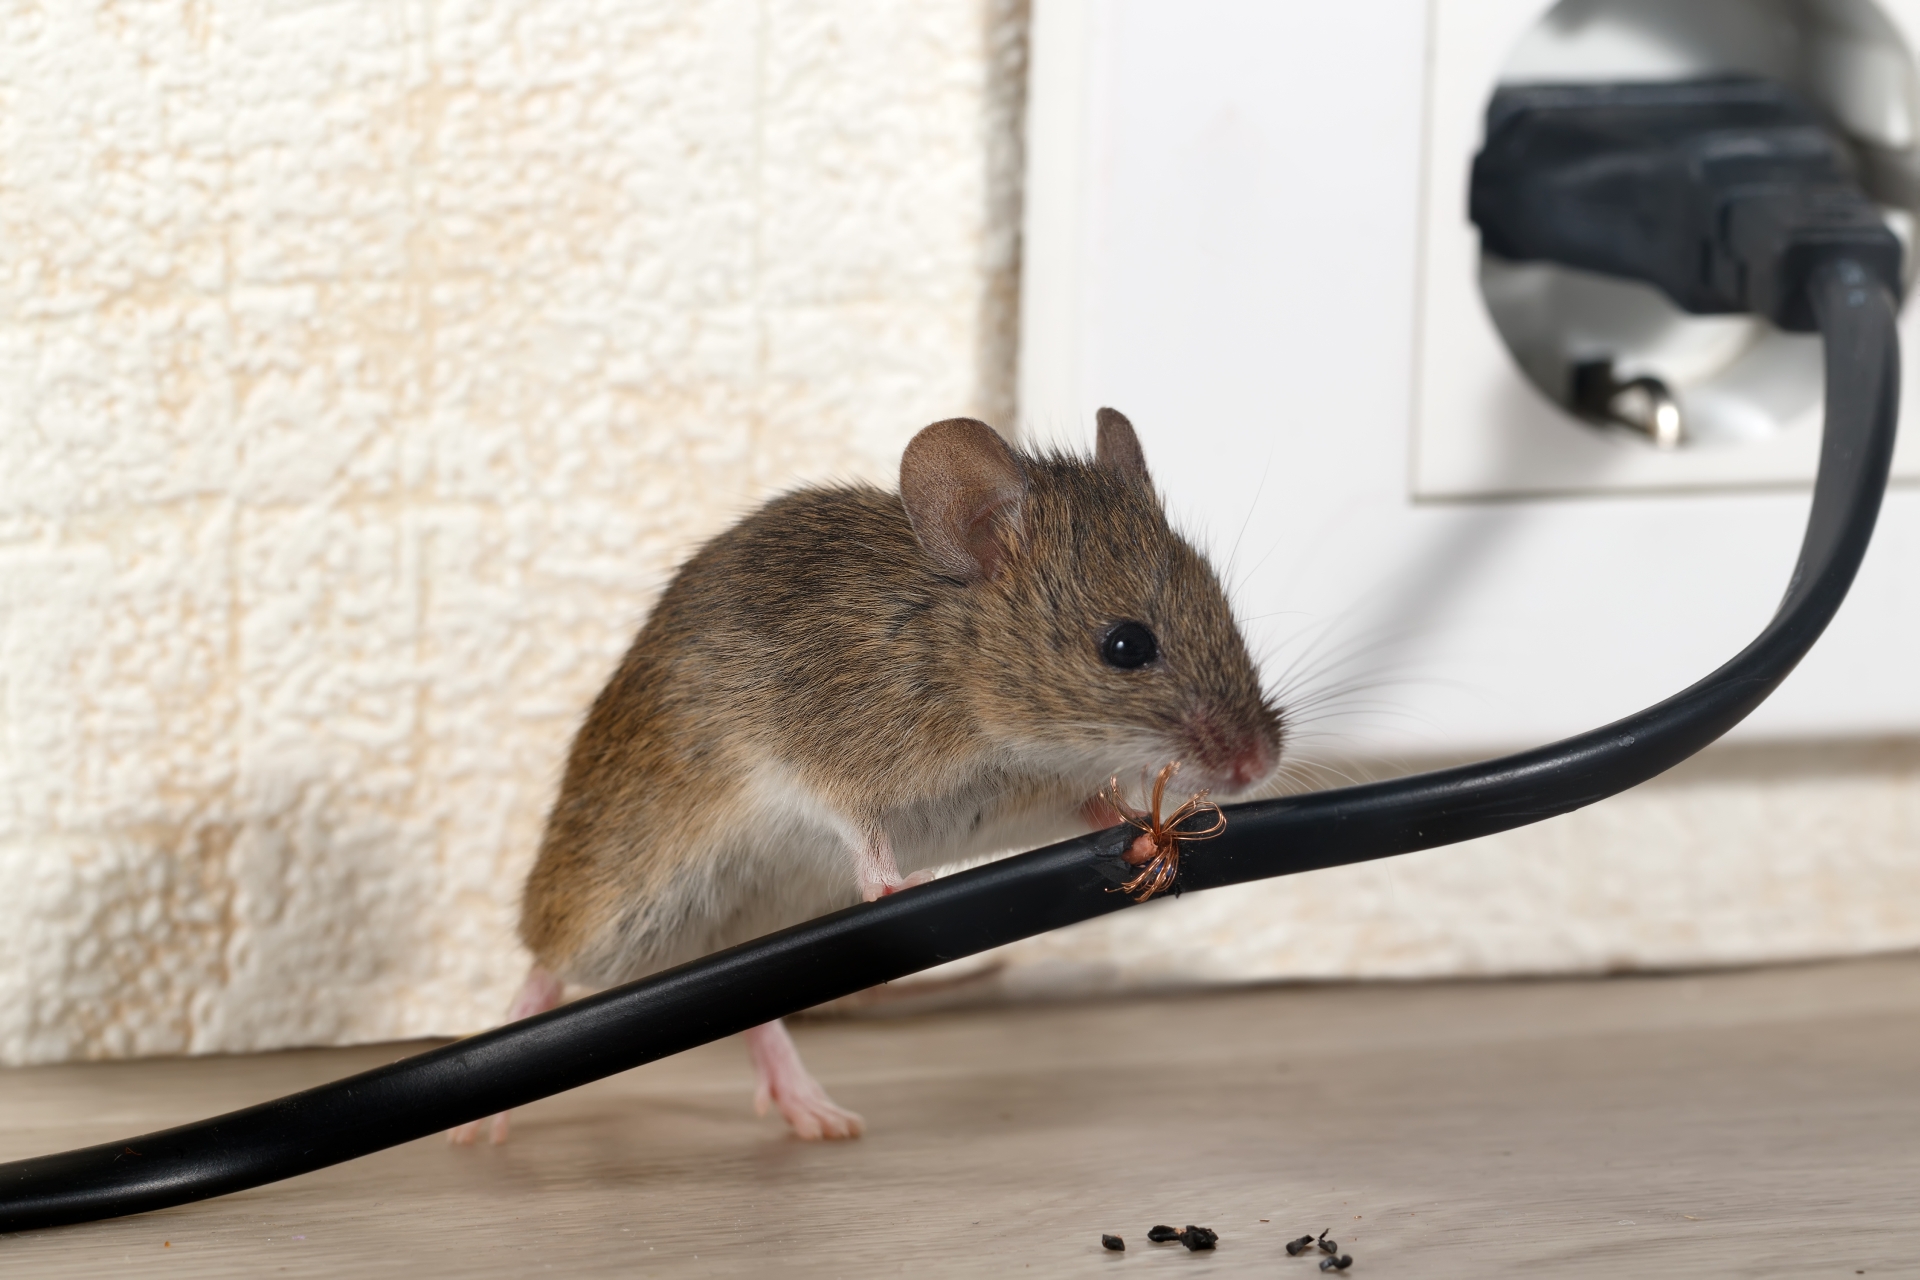 Mice Infestation, Pest Control in Barnehurst, DA7. Call Now 020 8166 9746